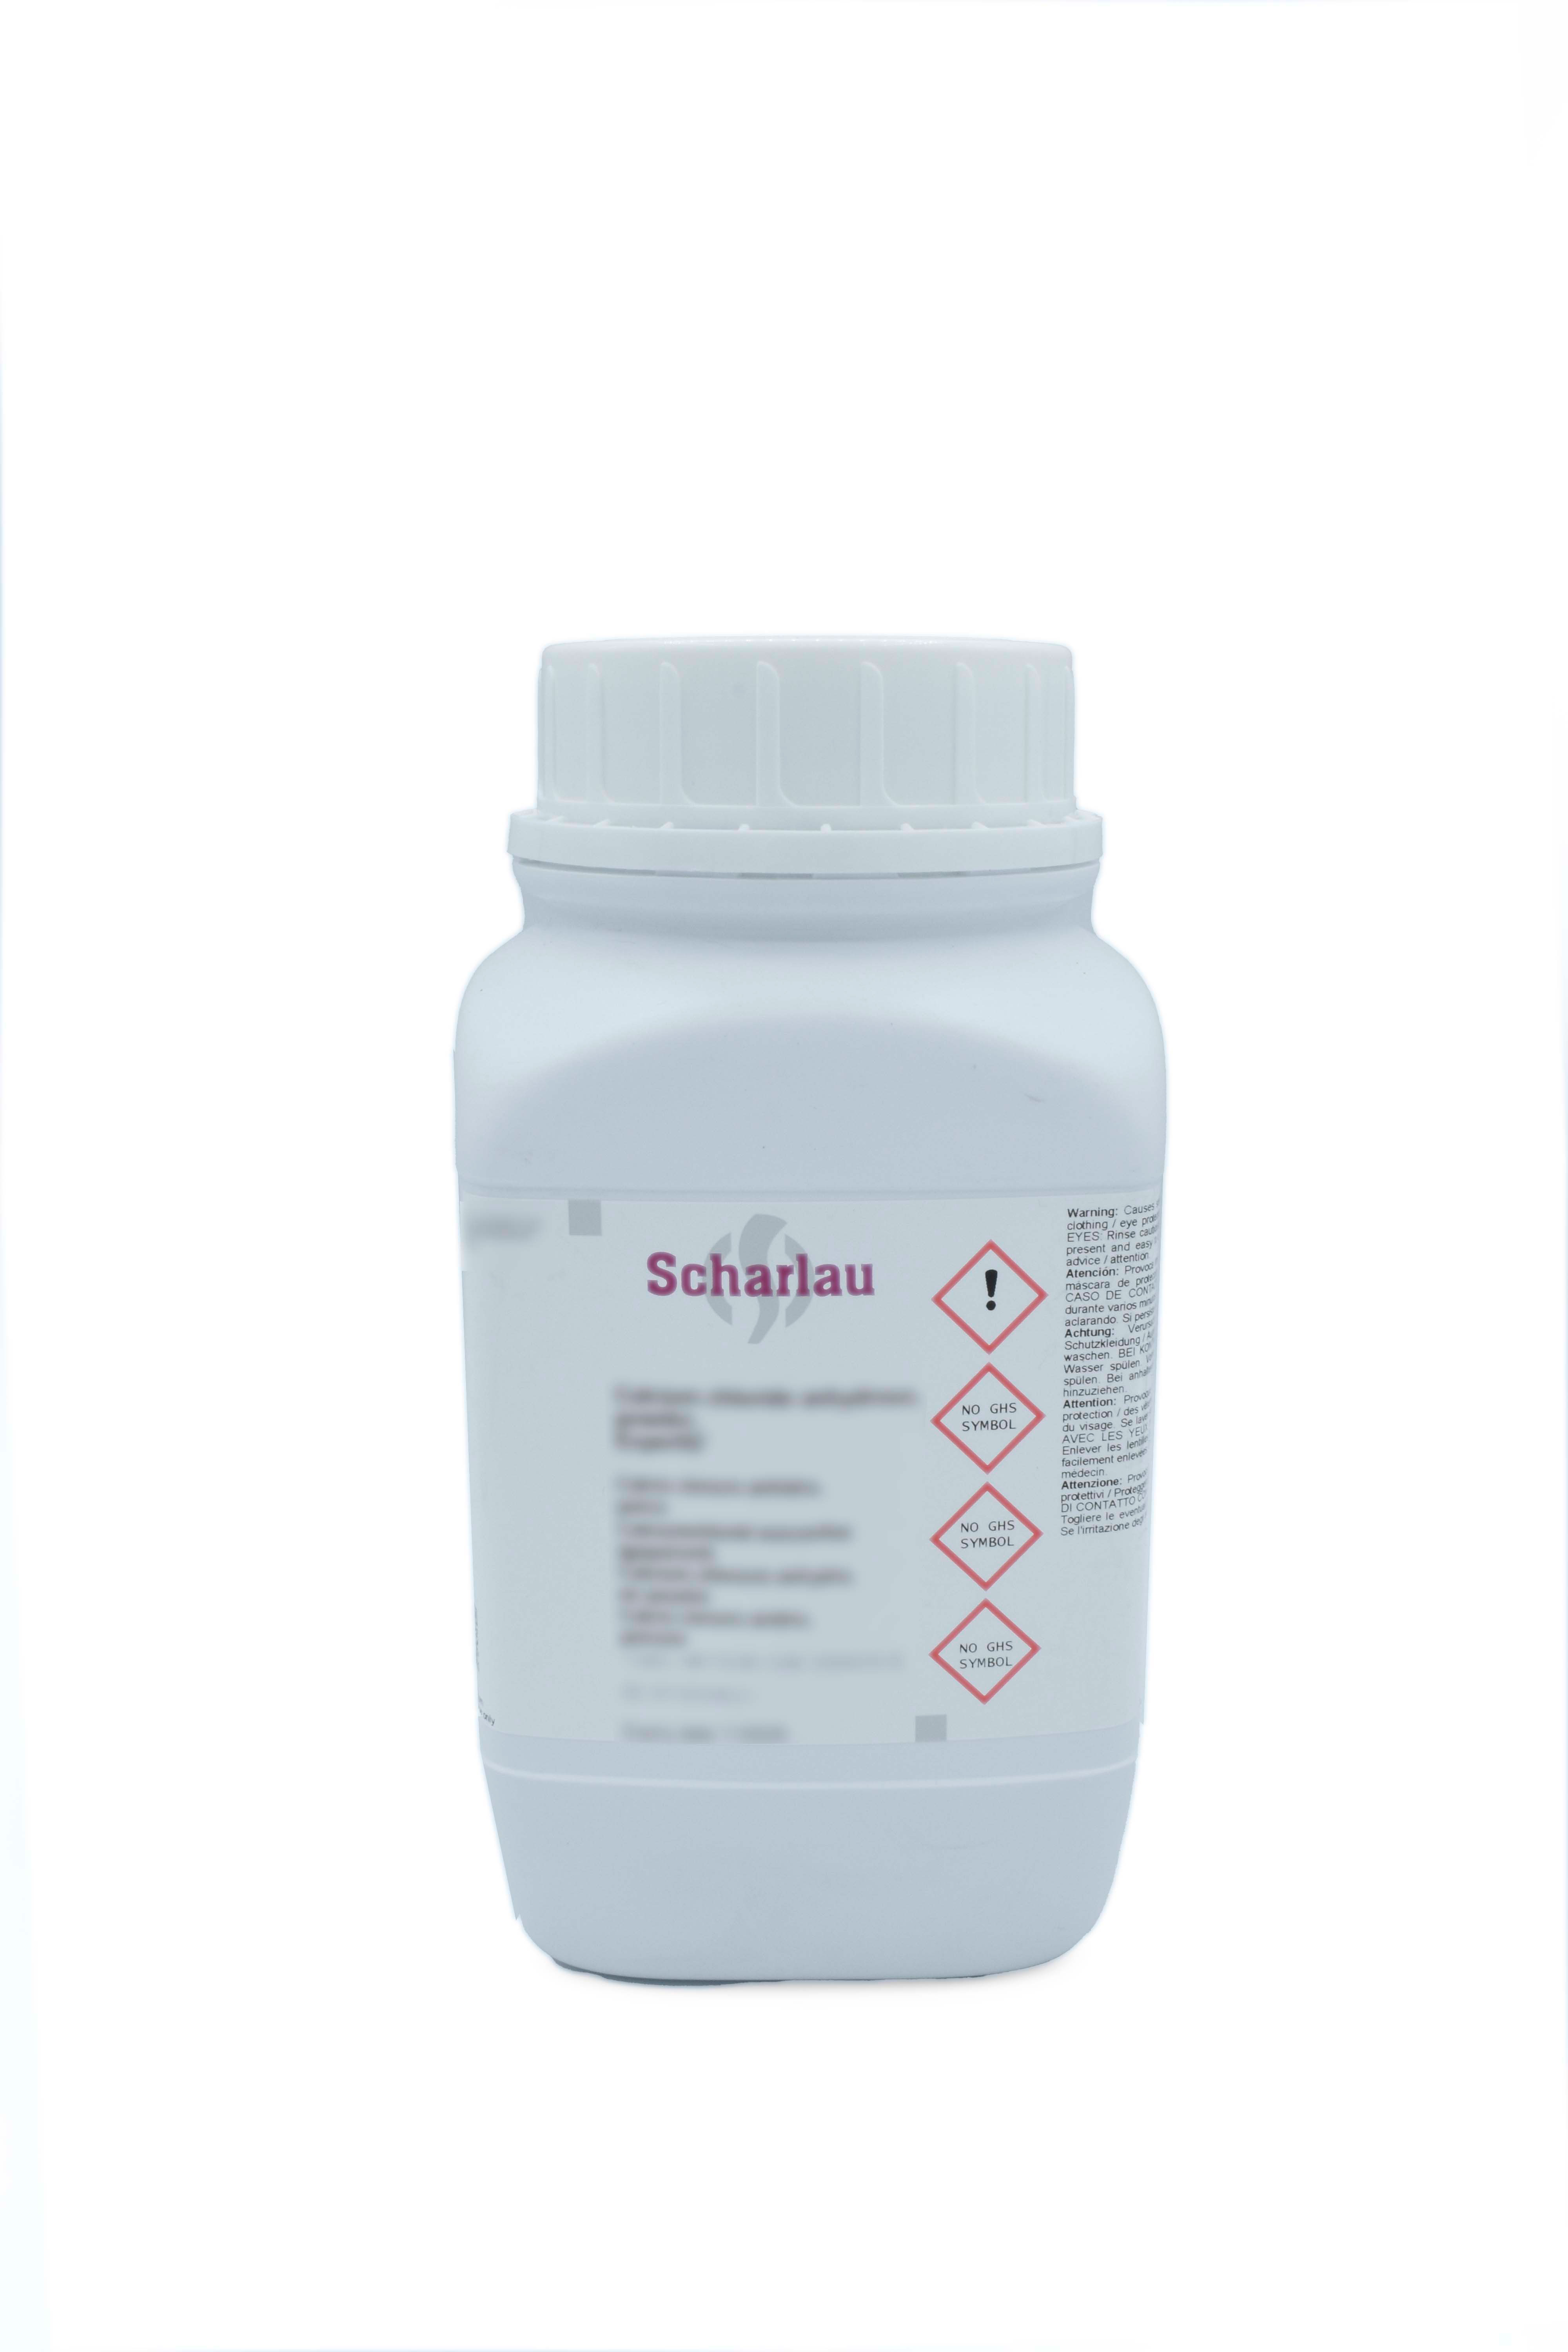 Salicylic acid, Pharmpur®, Ph Eur, BP, USP